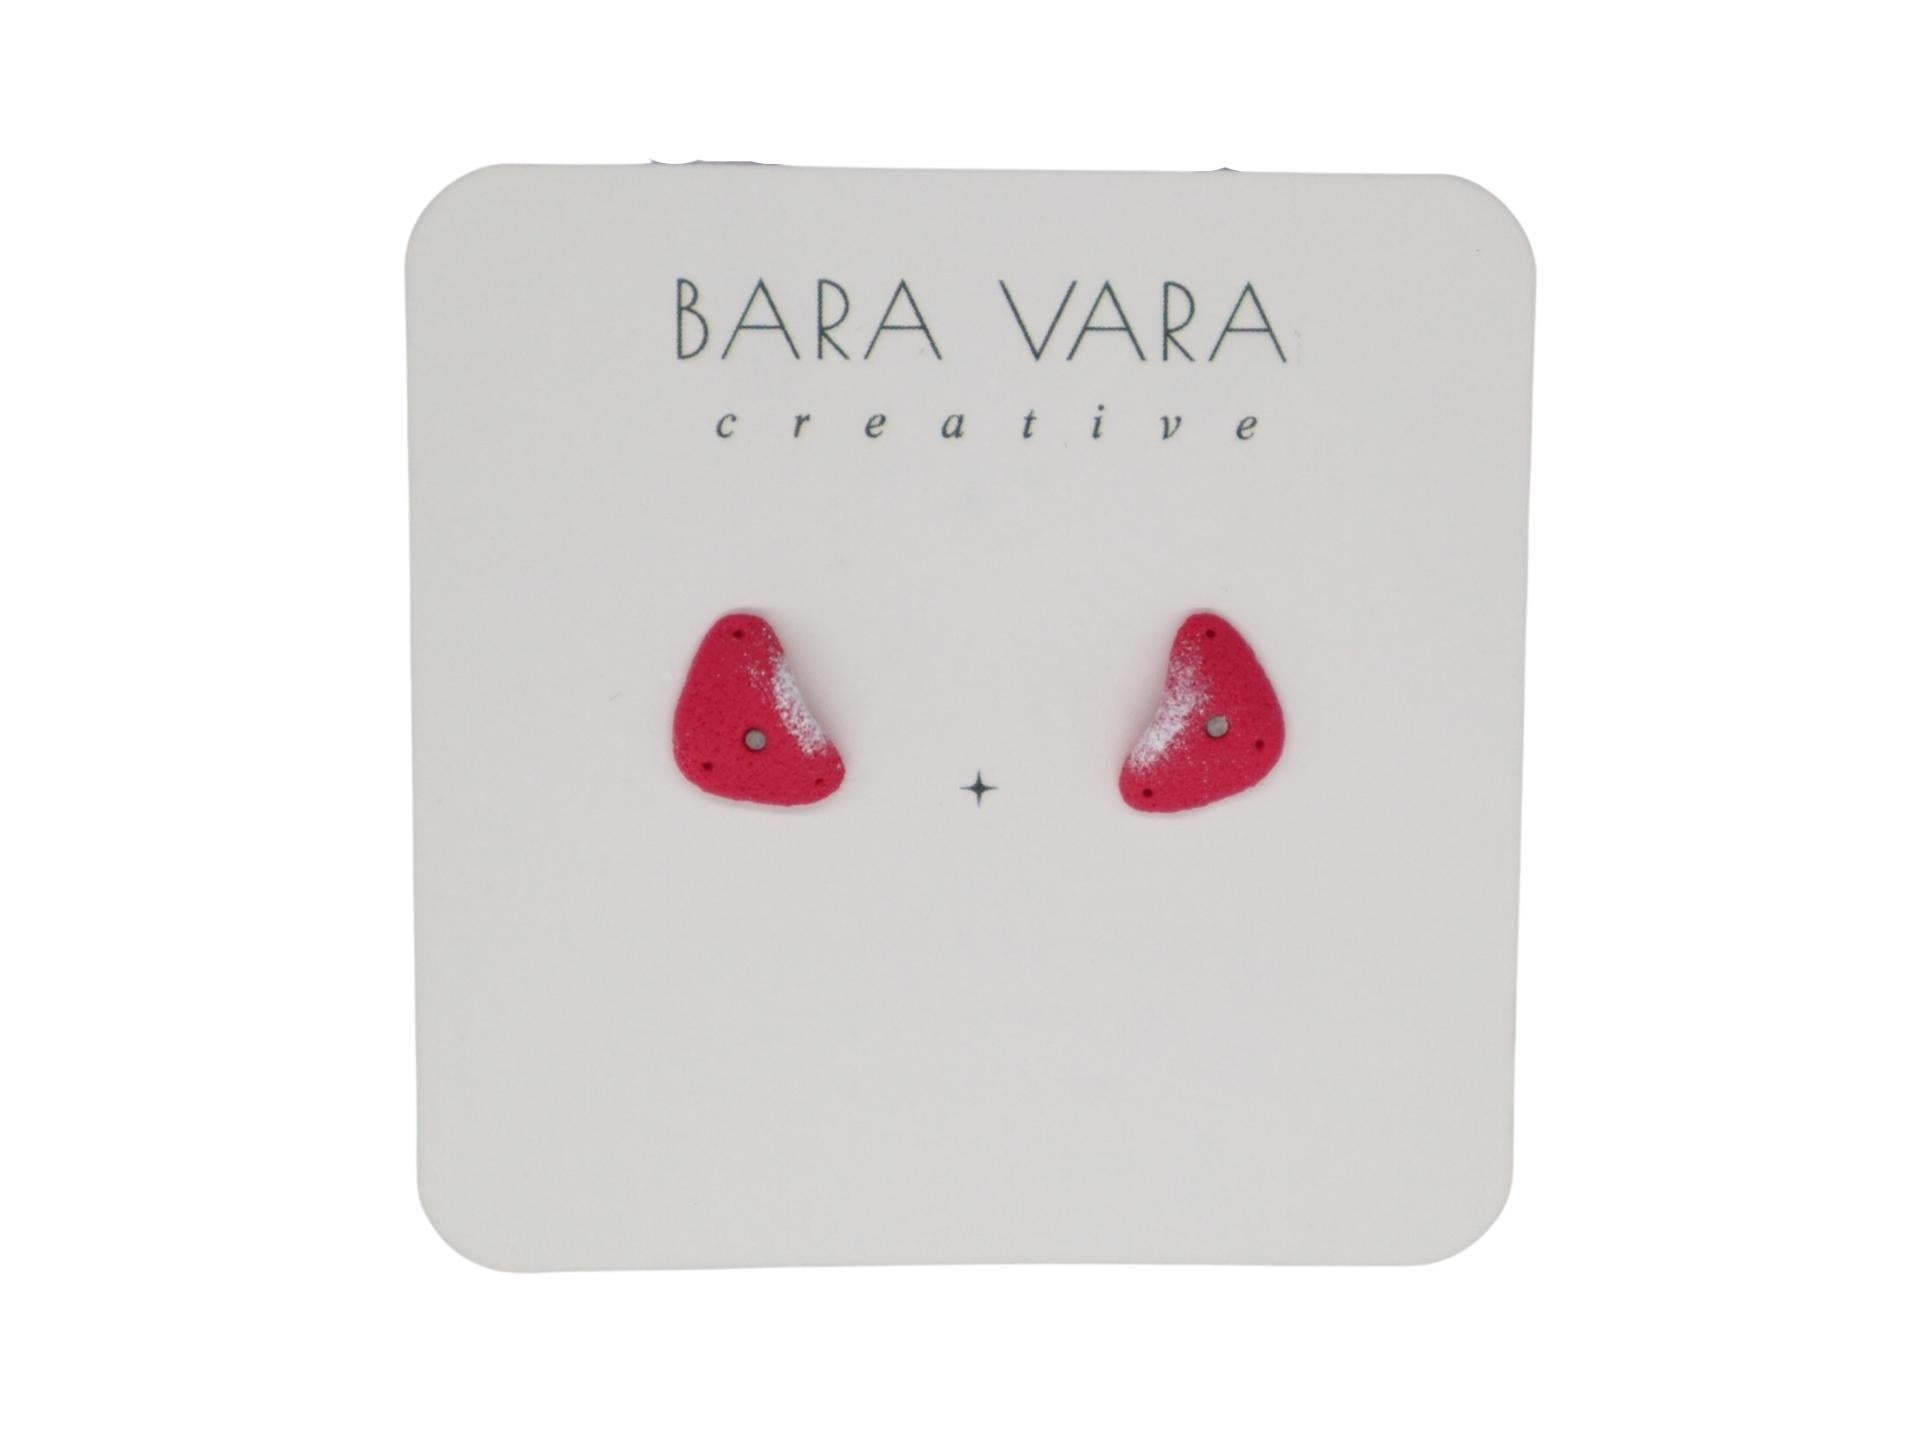 Bara Vara Creative Earrings - Hot Pink Crimp - Happy Biner